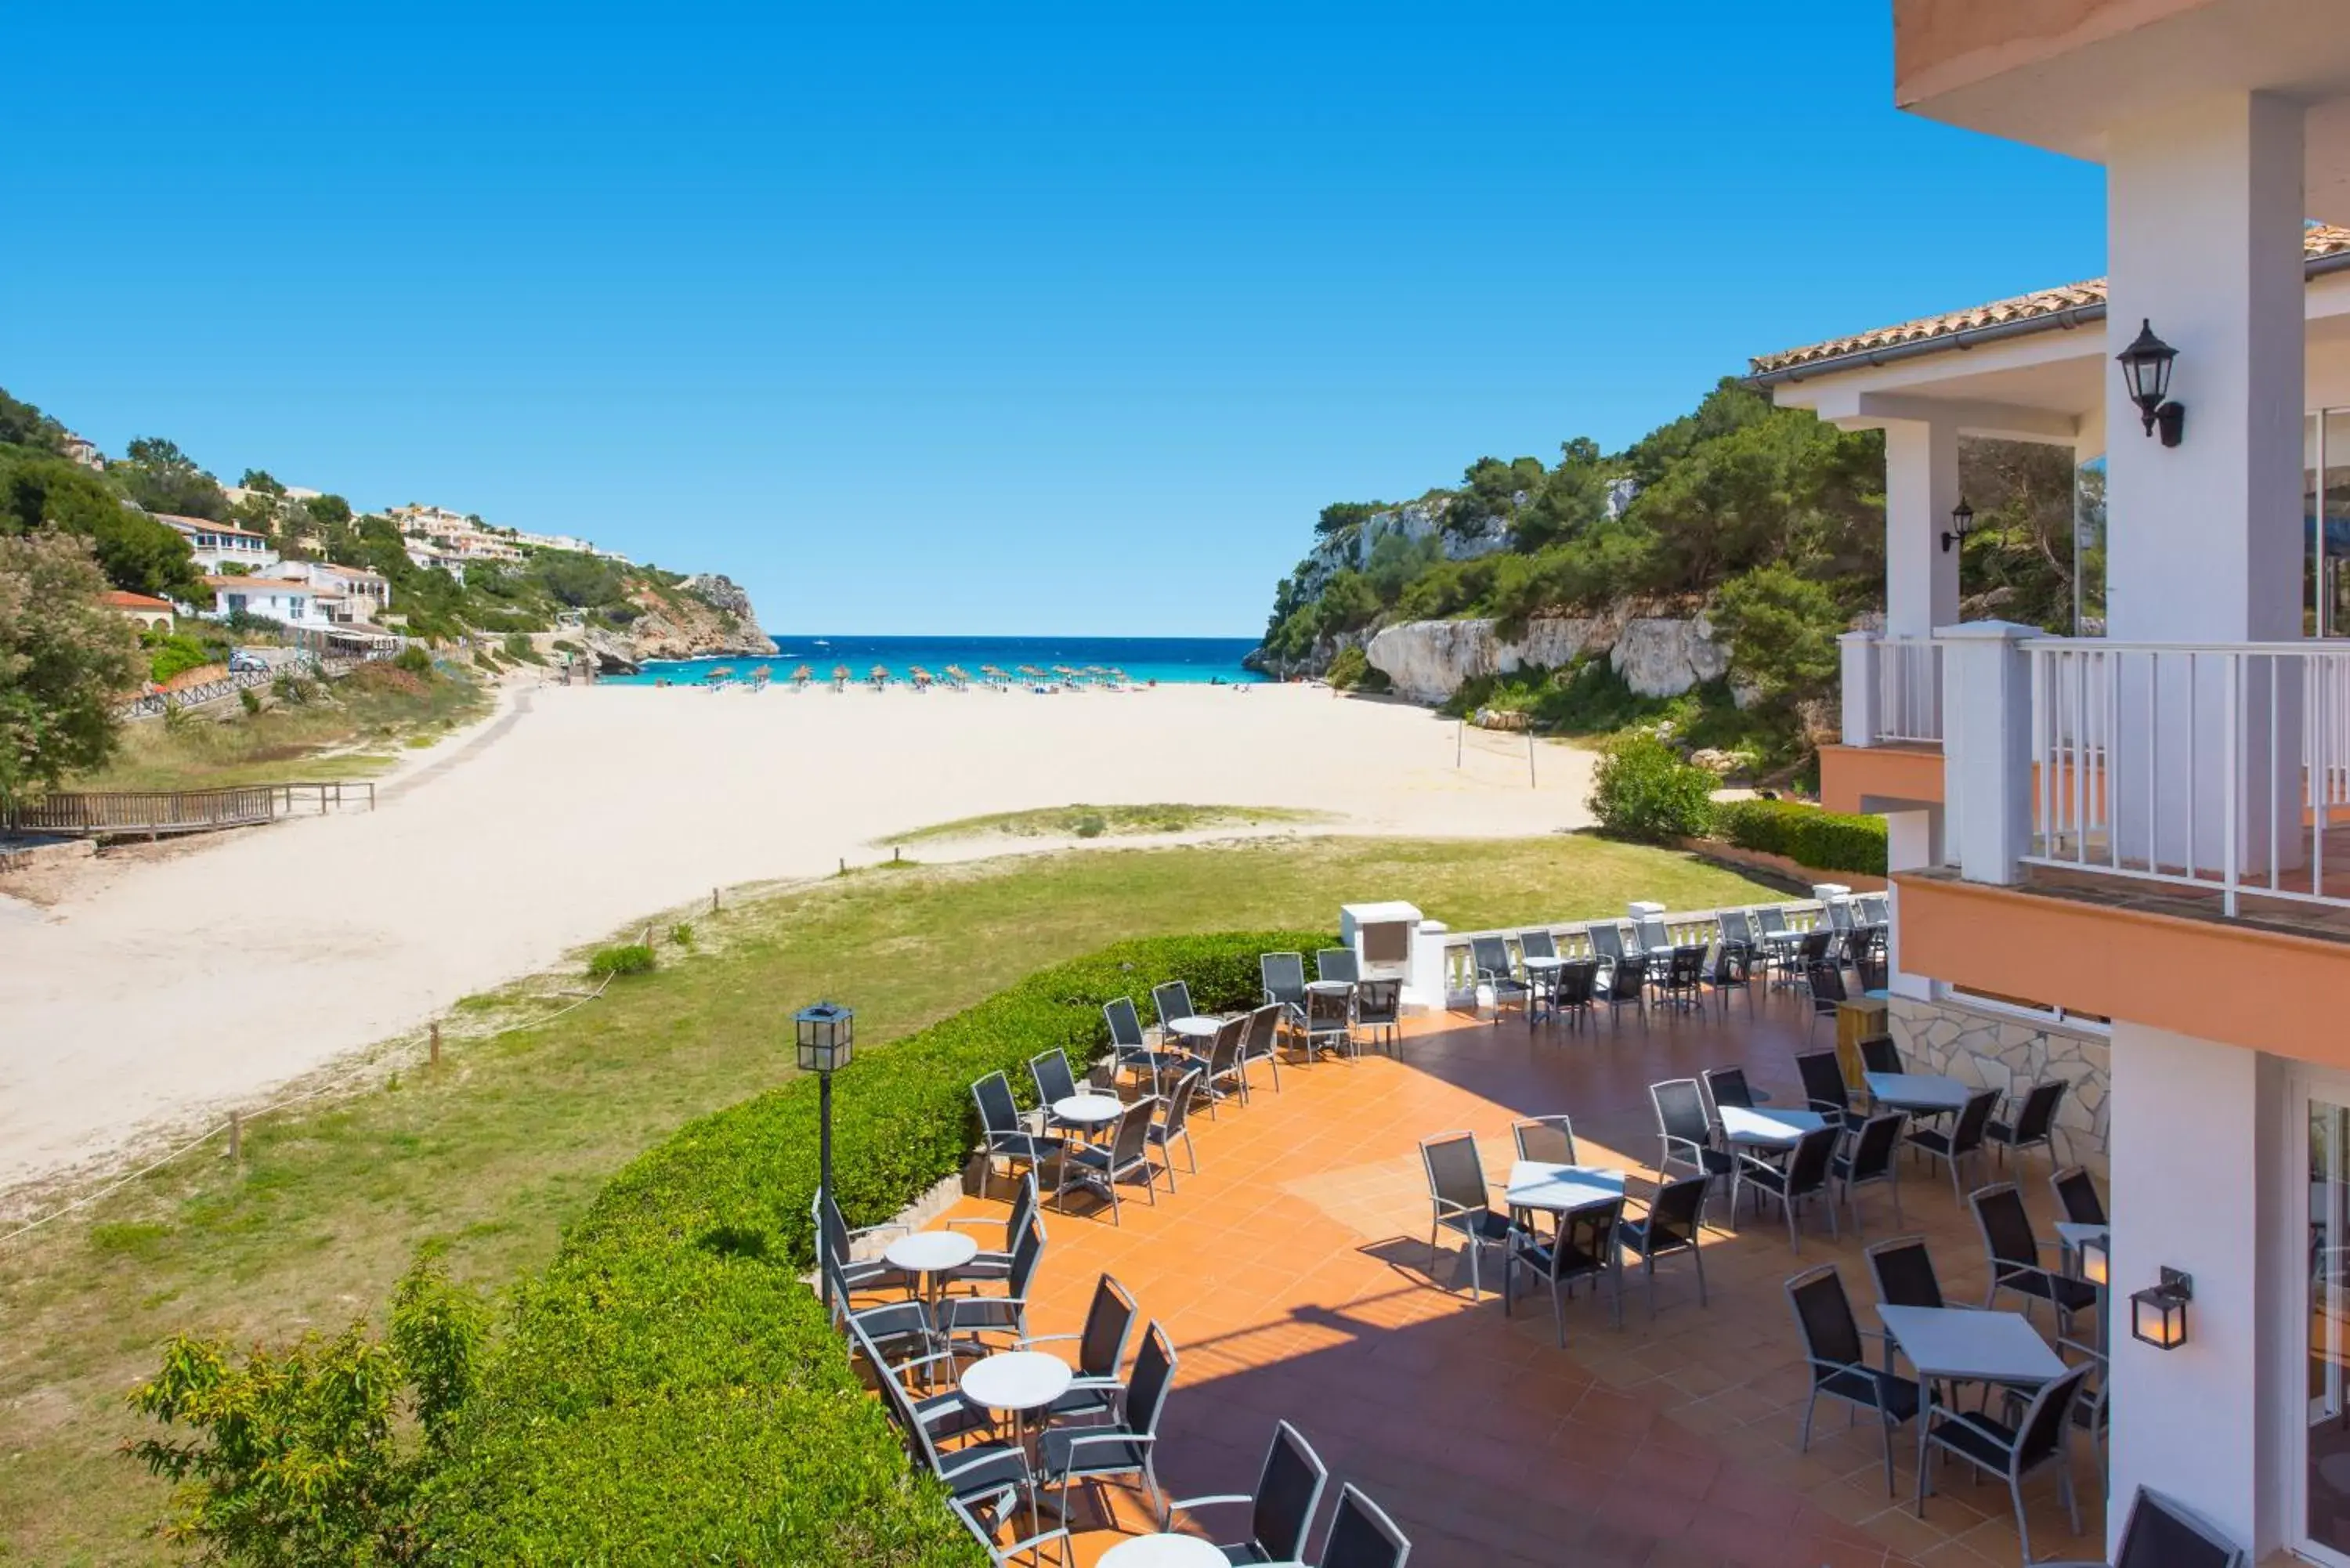 Off site in Hotel Cala Romantica Mallorca